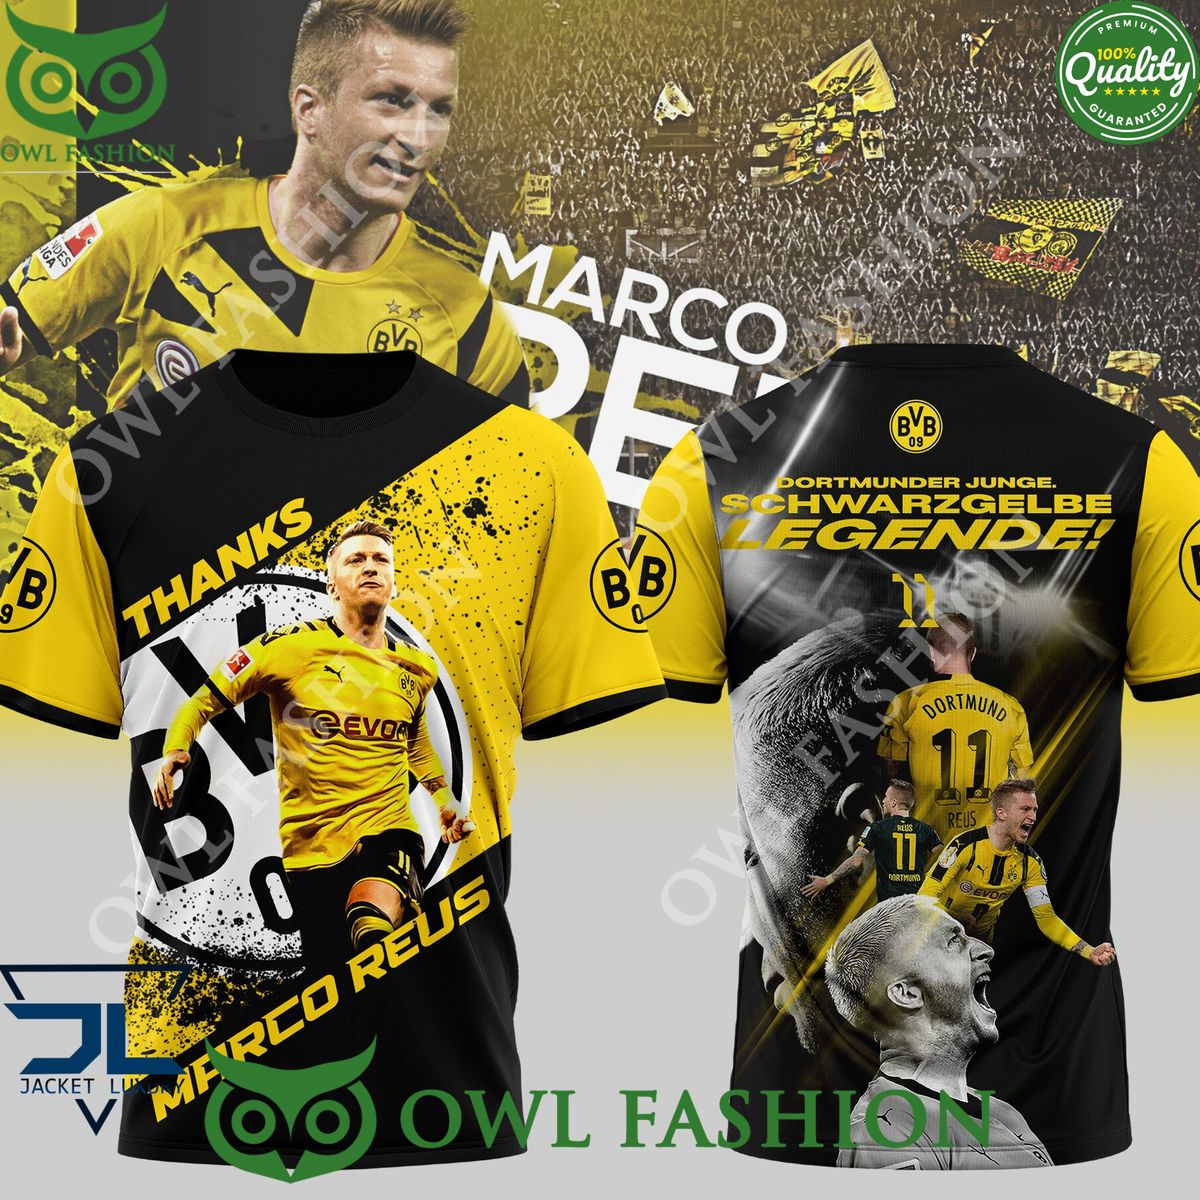 Thanks Marco Reus Borussia Dortmund Junge Schwarzgelbe Legende 11 t shirt